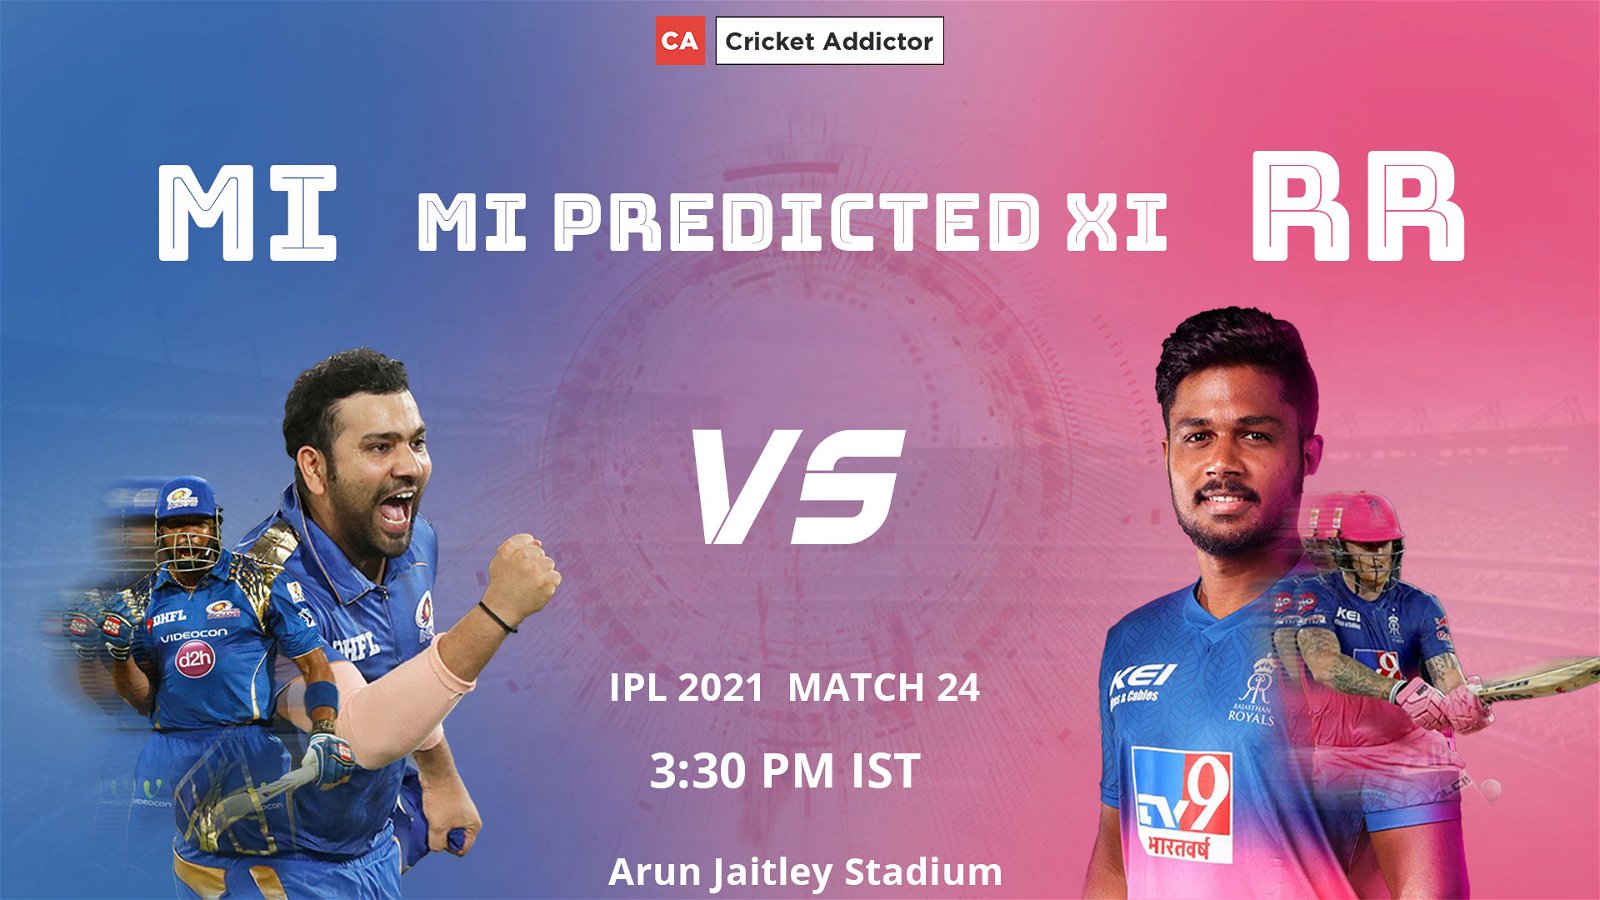 IPL 2021, Mumbai Indians, MI, MI vs RR, predicted playing XI, playing XI